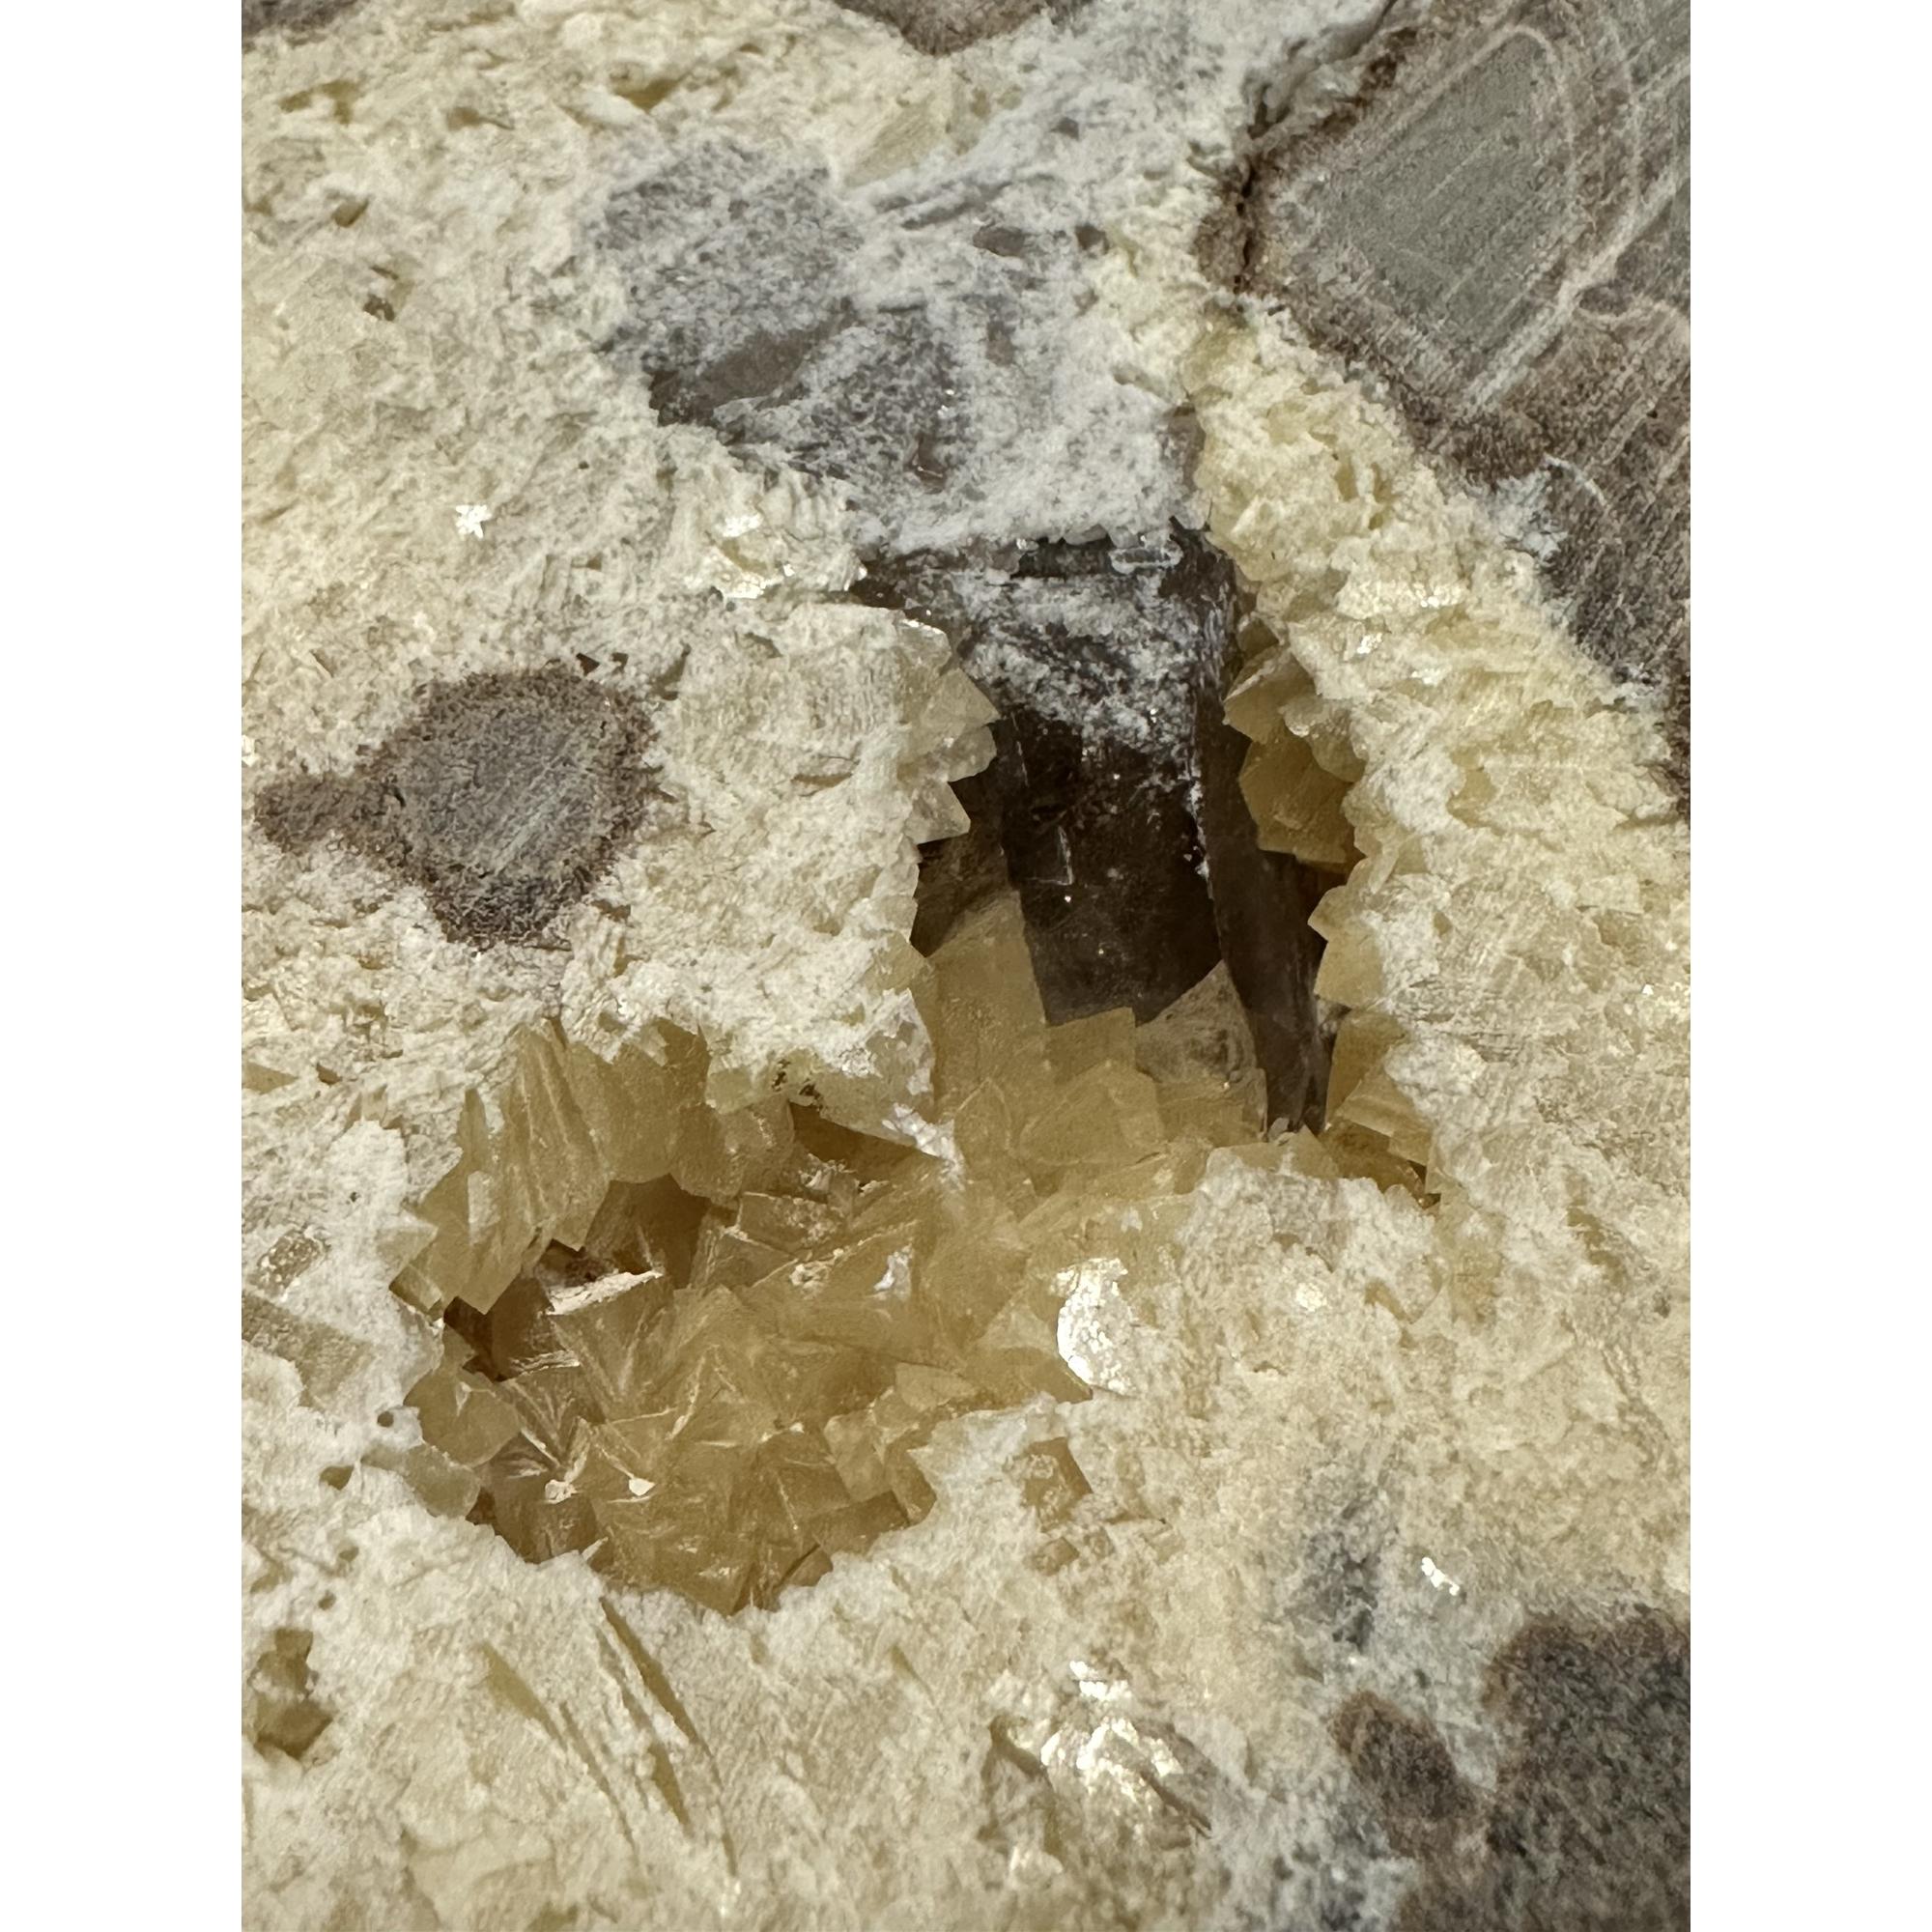 Septarian Slice, Utah, Calcite center Prehistoric Online